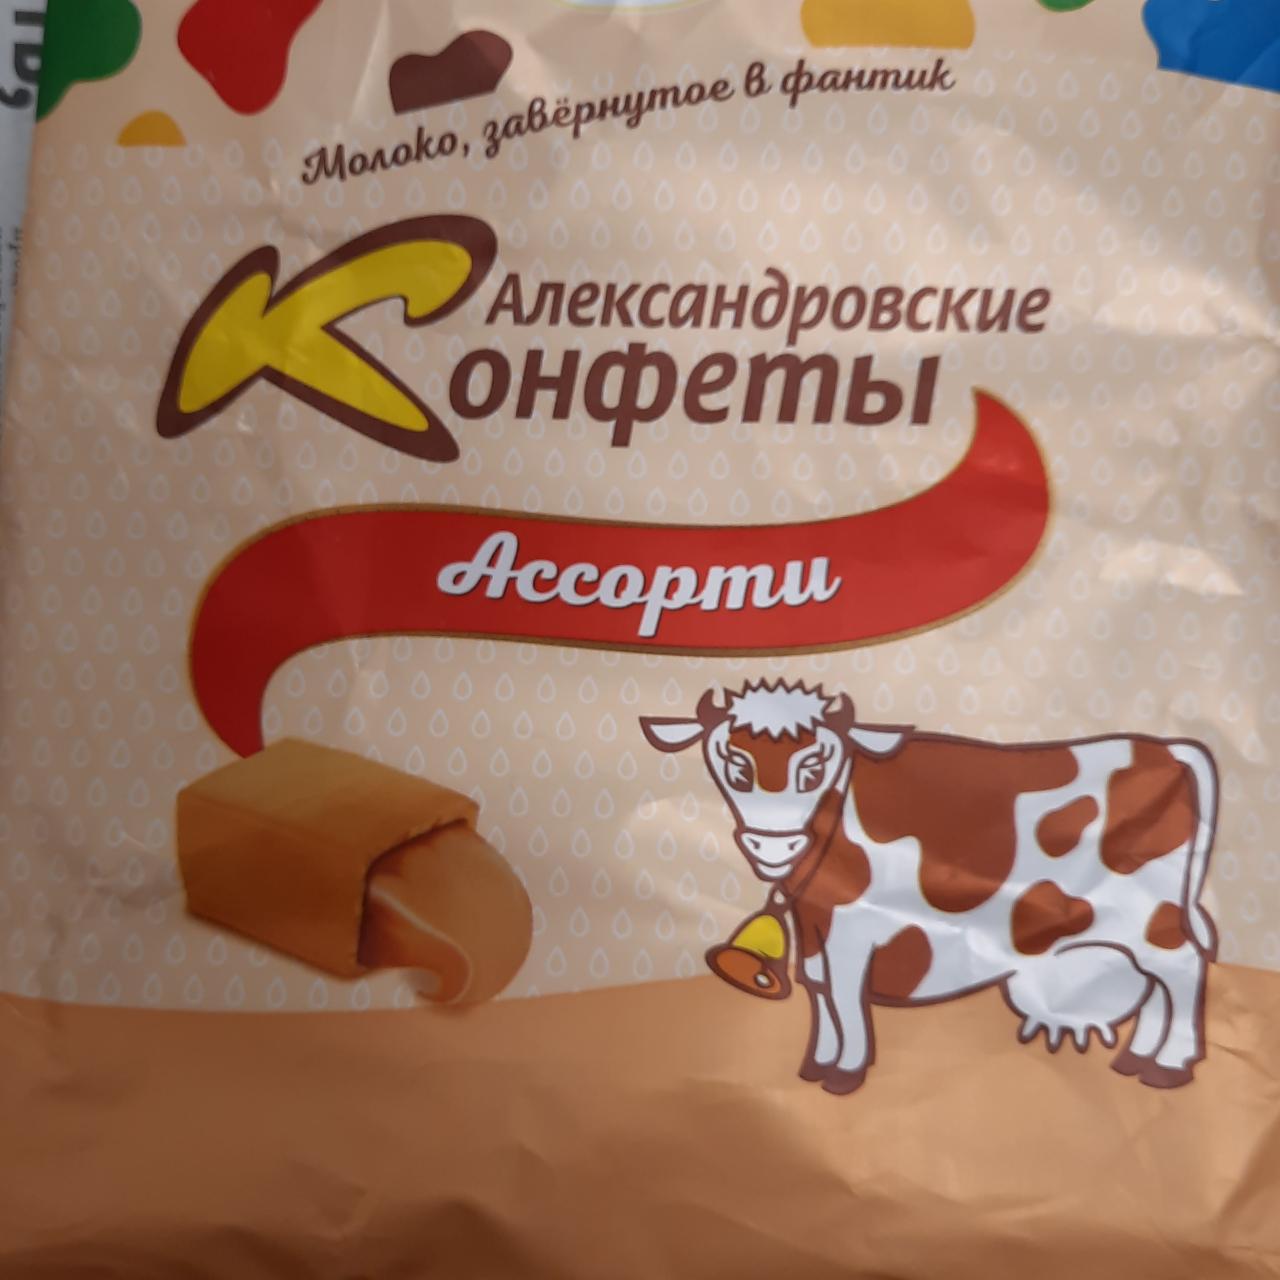 Фото - конфеты с арахисом конфеты Александровские